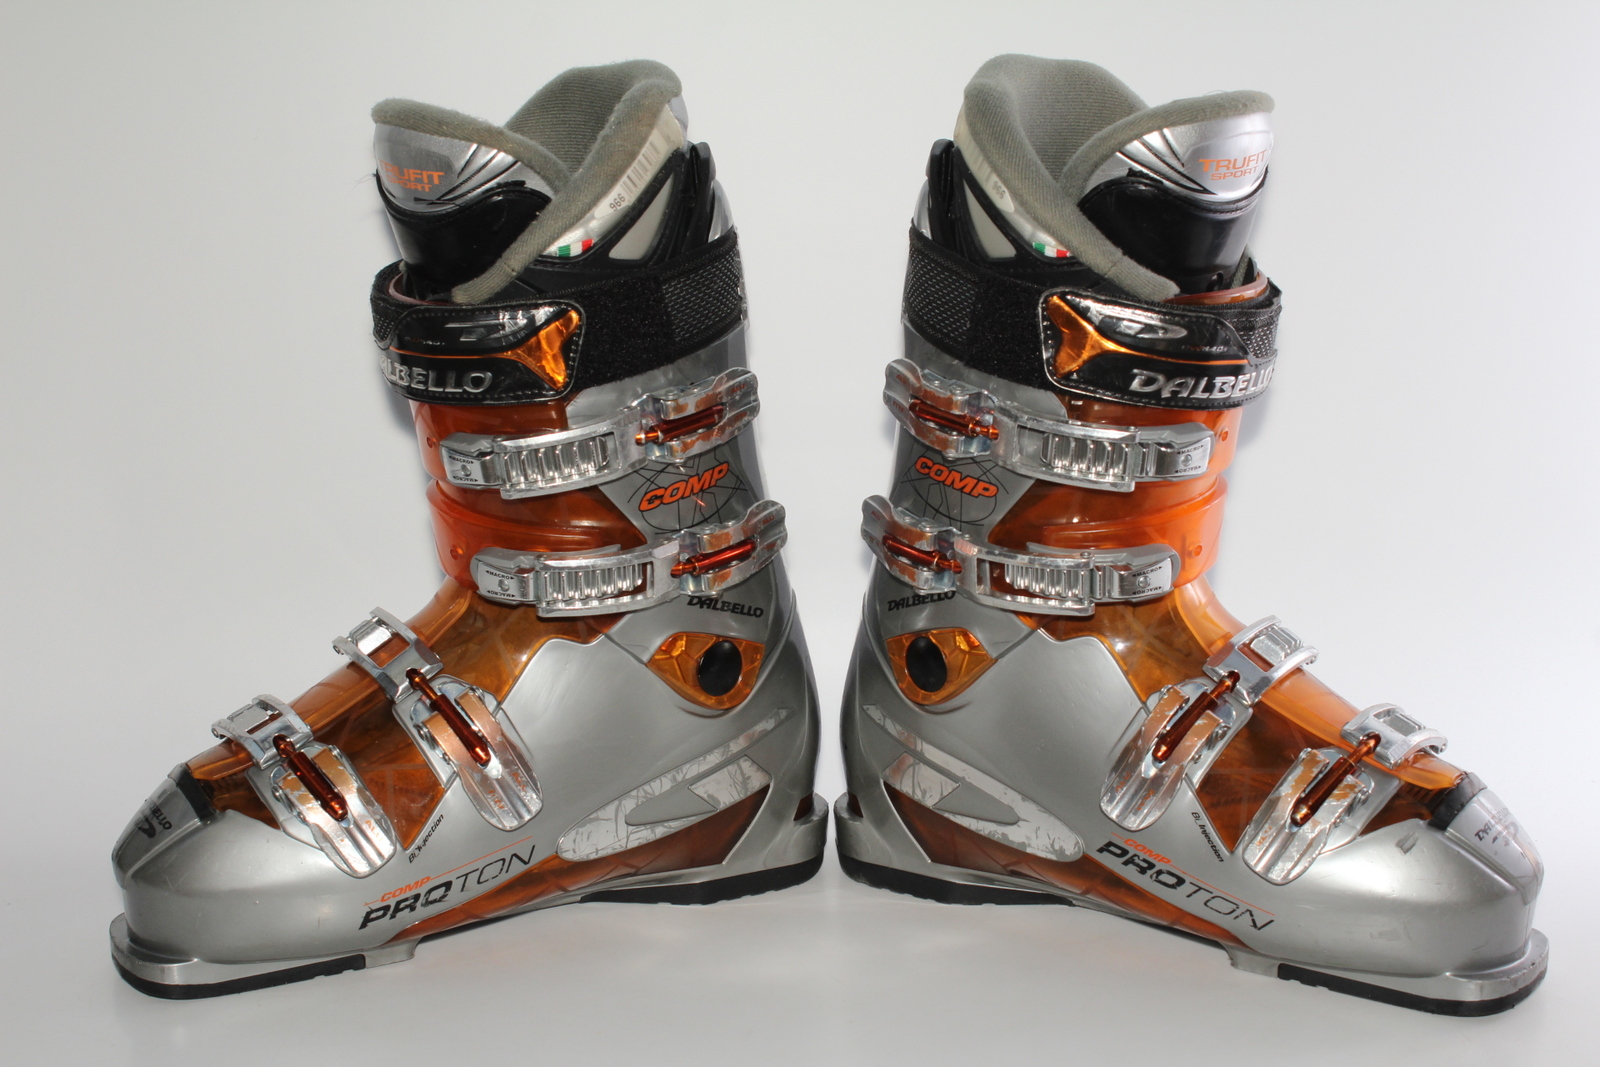 Lyžařské boty Dalbello Comp Proton vel. EU43.5 flexe 70